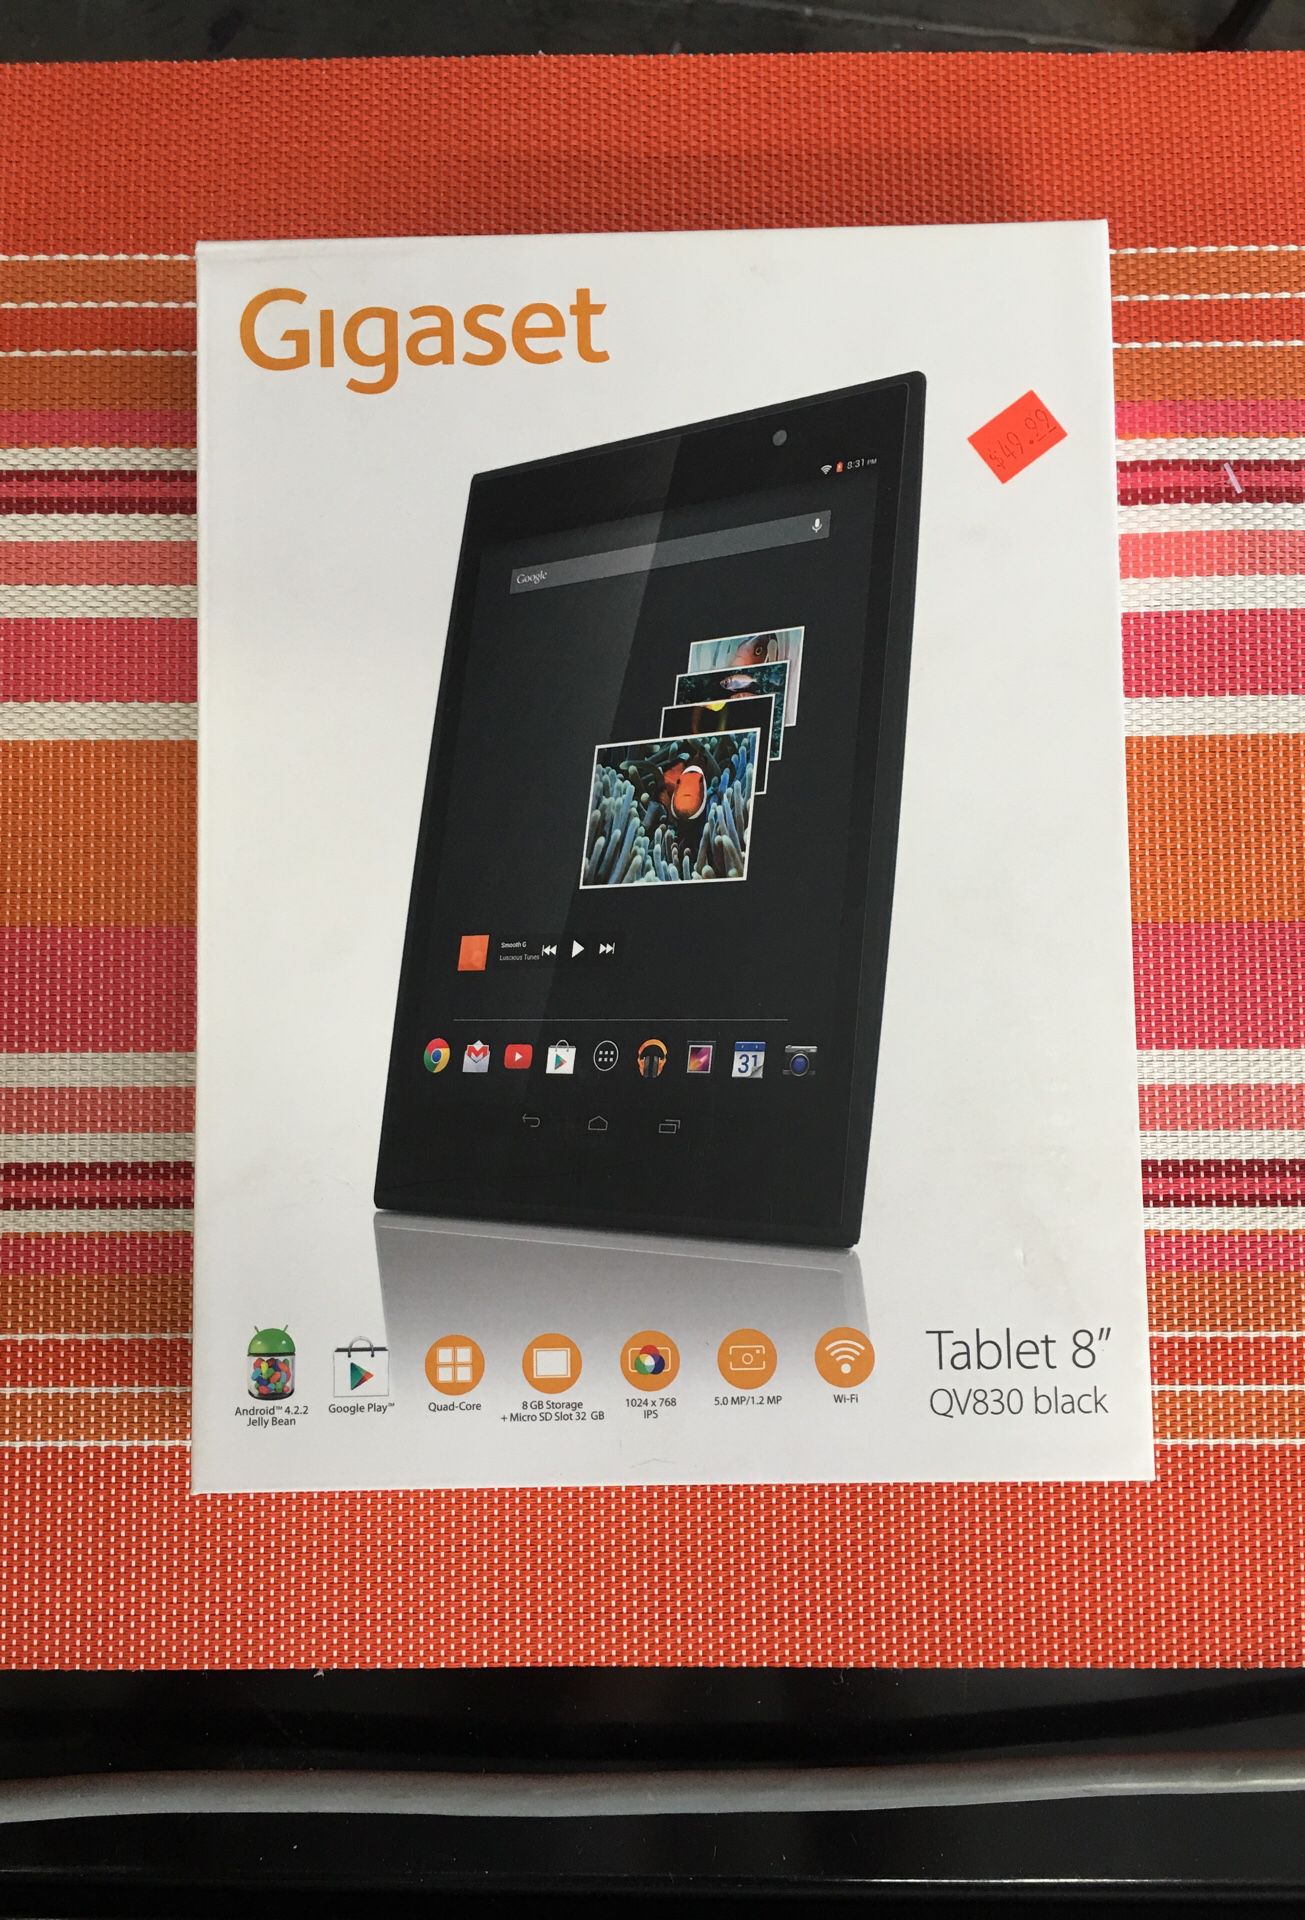 Gigaset Tablet 8” QV830 Black